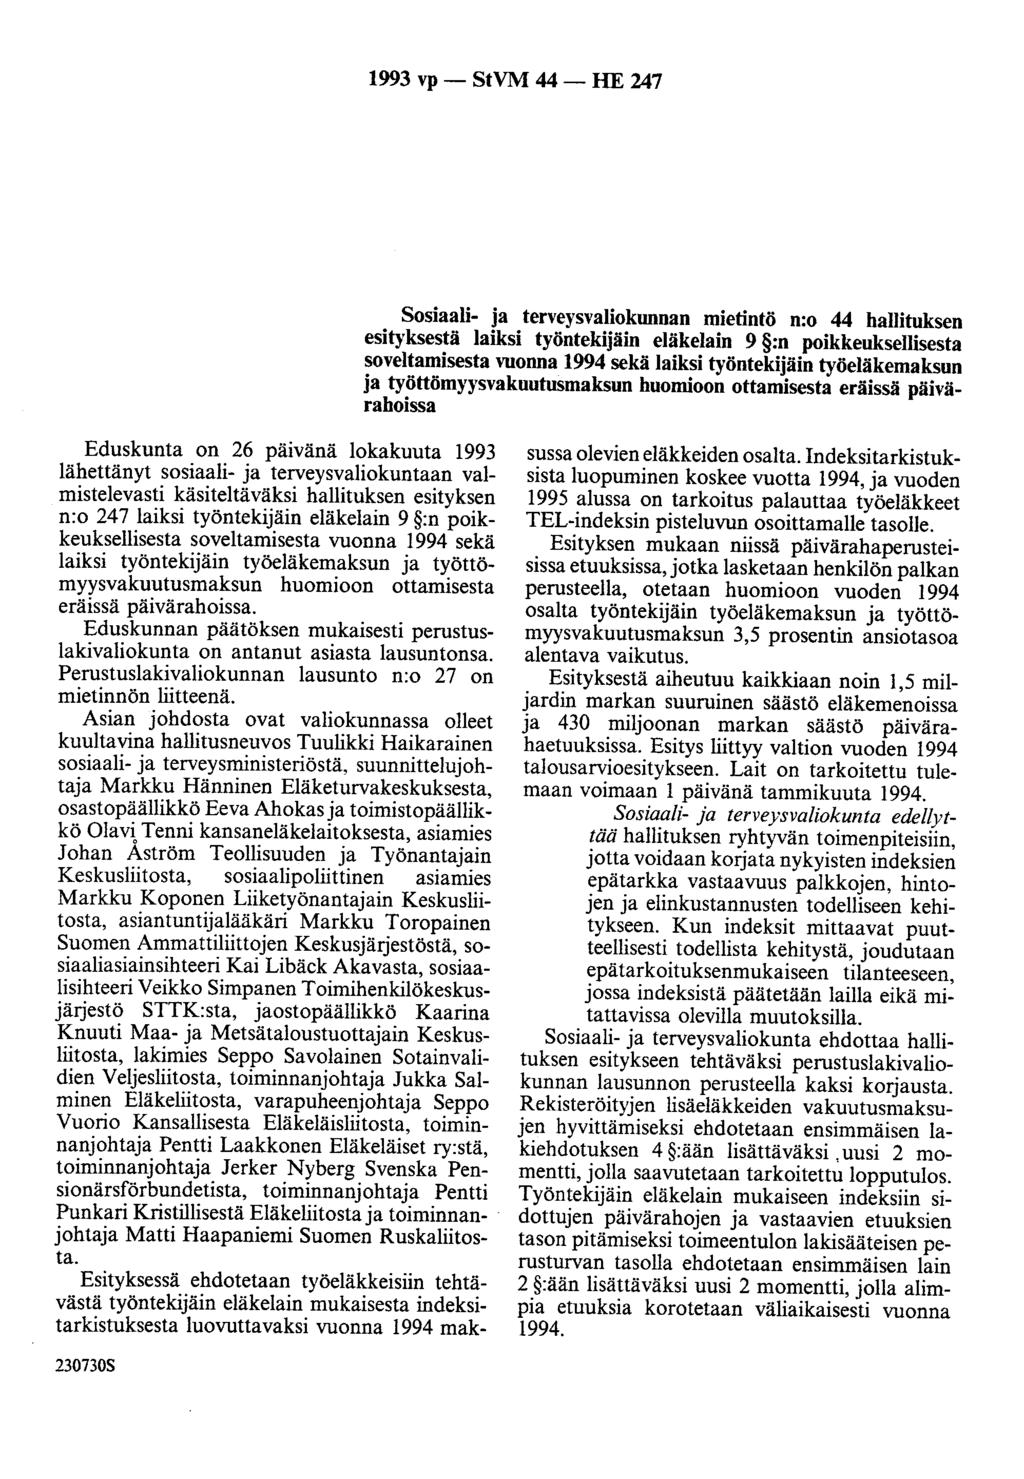 1993 vp - StVM 44 - HE 247 Sosiaali- ja terveysvaliokunnan mietintö n:o 44 hallituksen esityksestä laiksi työntekijäin eläkelain 9 :n poikkeuksellisesta soveltamisesta vuonna 1994 sekä laiksi